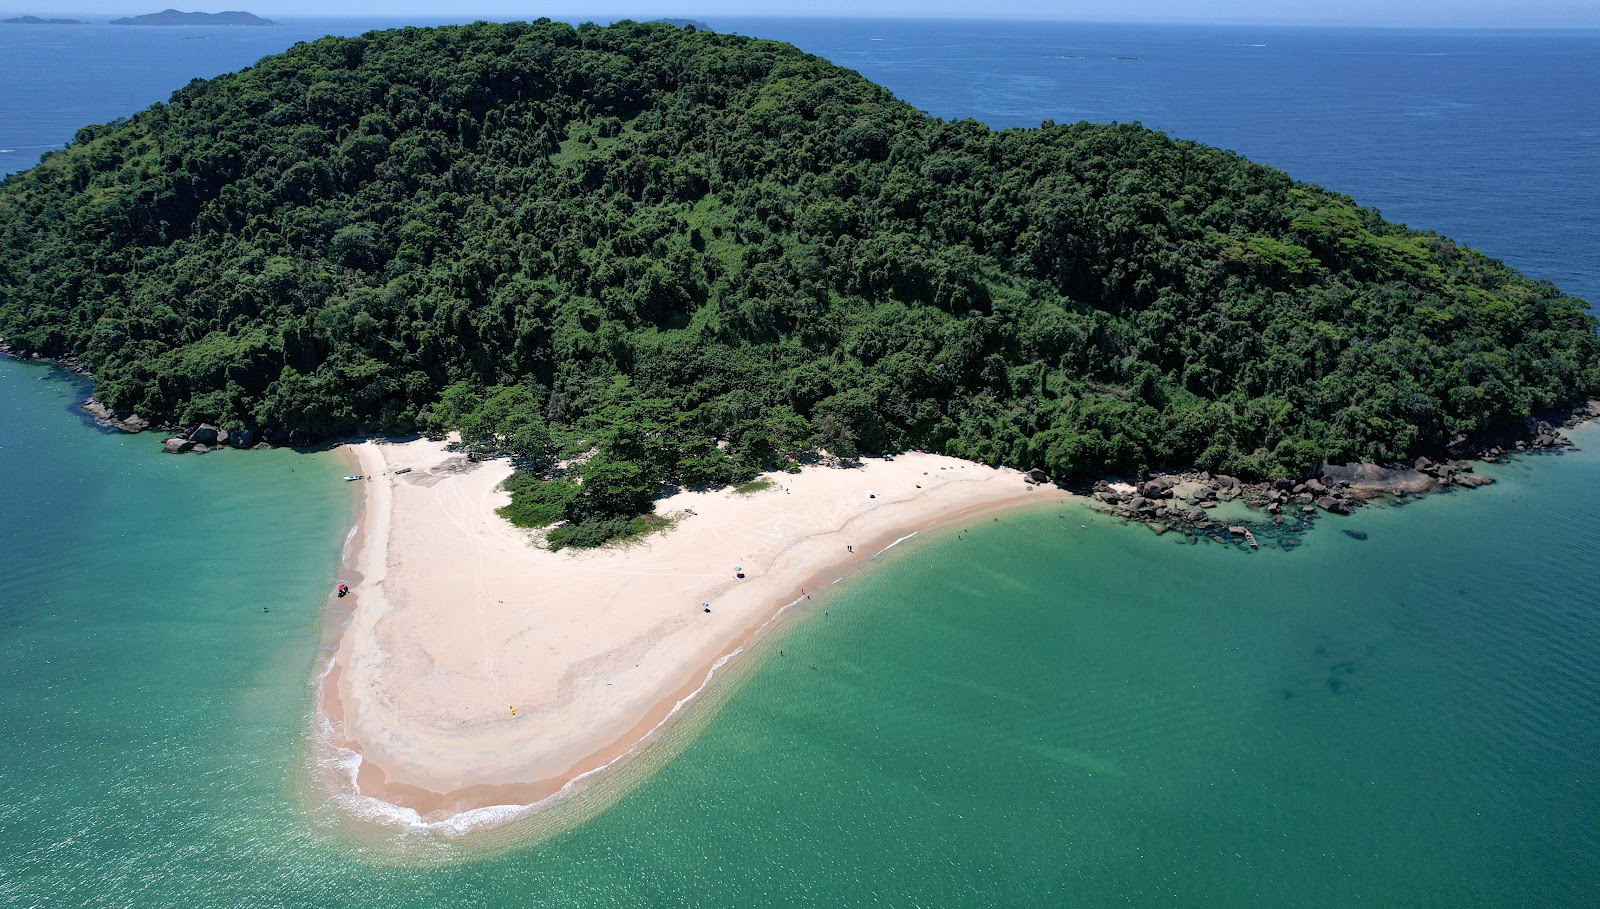 Praia da Ilha do Prumirim'in fotoğrafı geniş plaj ile birlikte